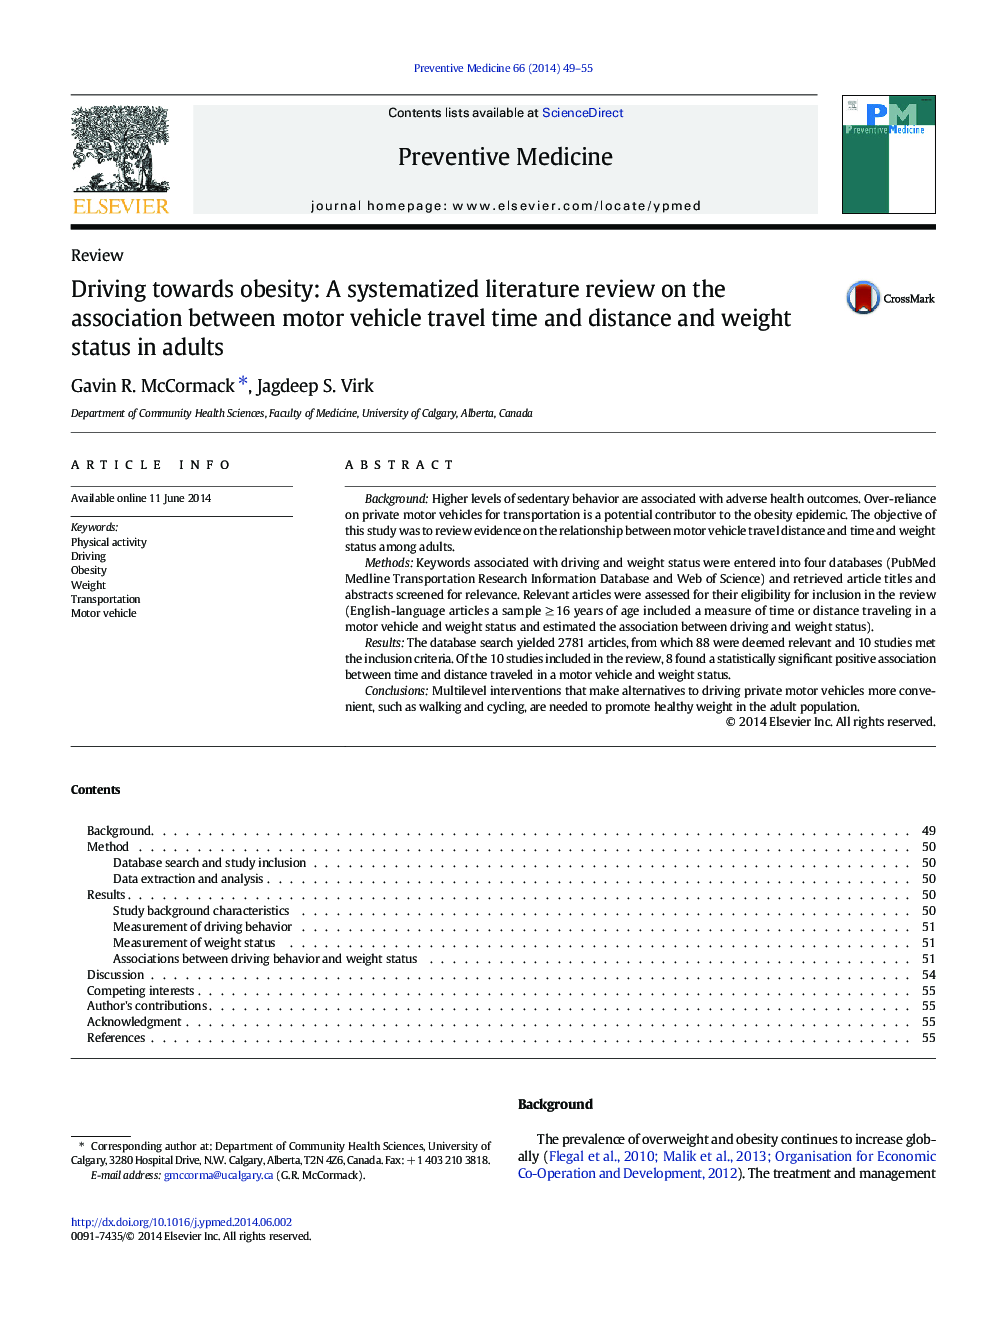 رانندگی به سمت چاقی: یک بررسی ادبی سیستماتیک در ارتباط بین زمان سفر خودرو و فاصله و وزن در بزرگسالان 